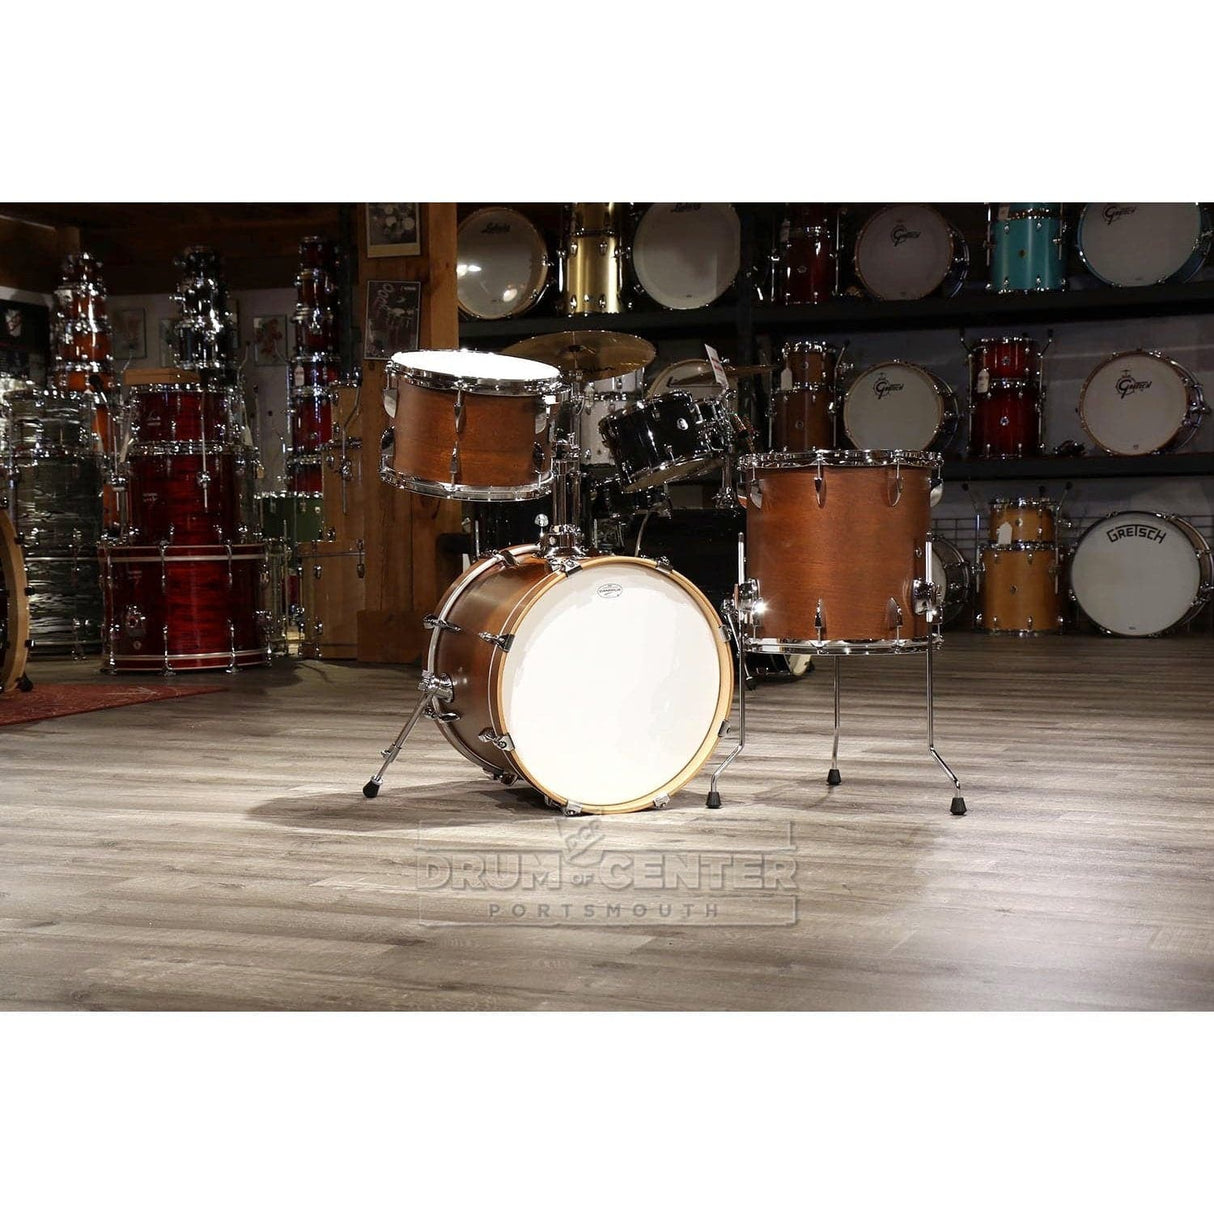 Canopus Yaiba 3pc Bop Drum Set Antique Brown Matte Lacquer